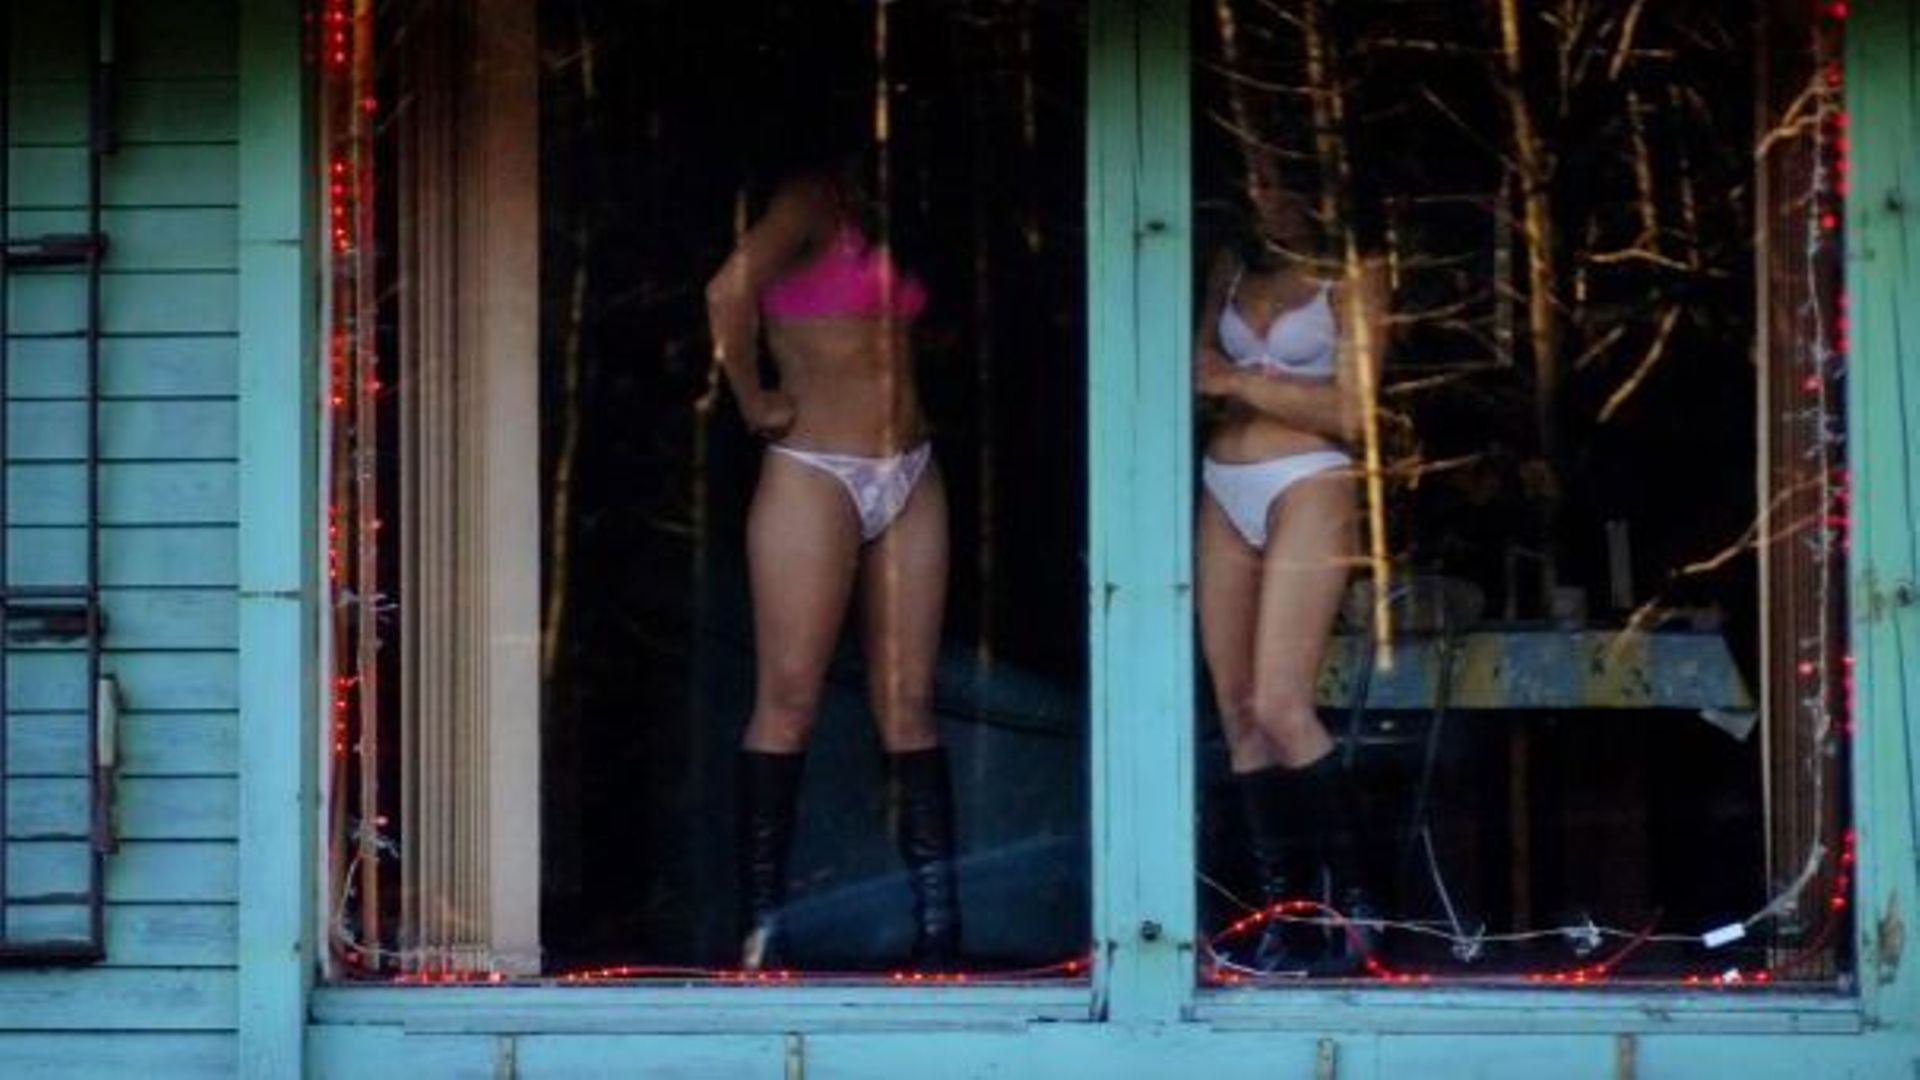 A Schaerbeek, un nouveau règlement communal impose une taxe "sur les lieux de prostitution en vitrines". 